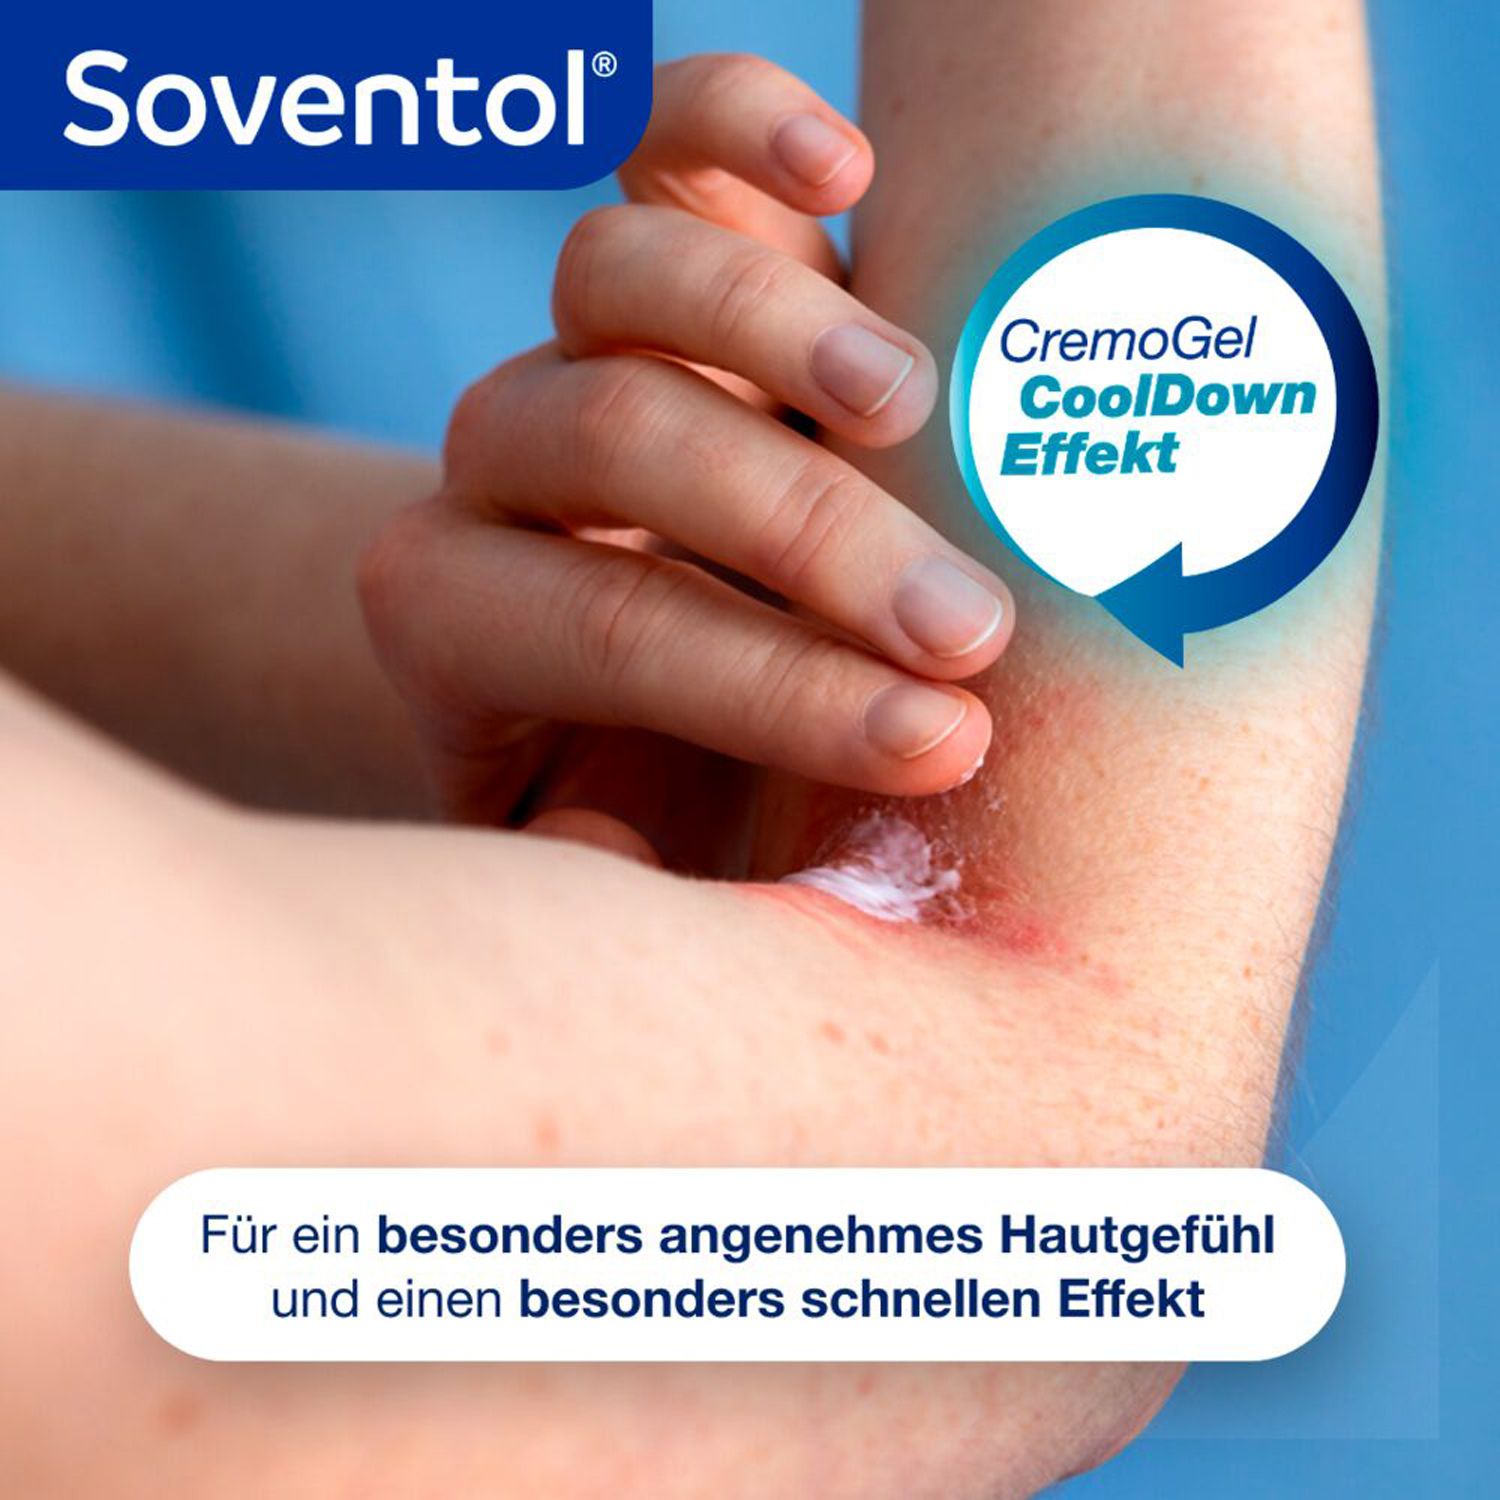 Soventol HydroCortisonACETAT 0,5% Hautentzündungen - Jetzt 2€ mit dem Code soventol2 sparen*